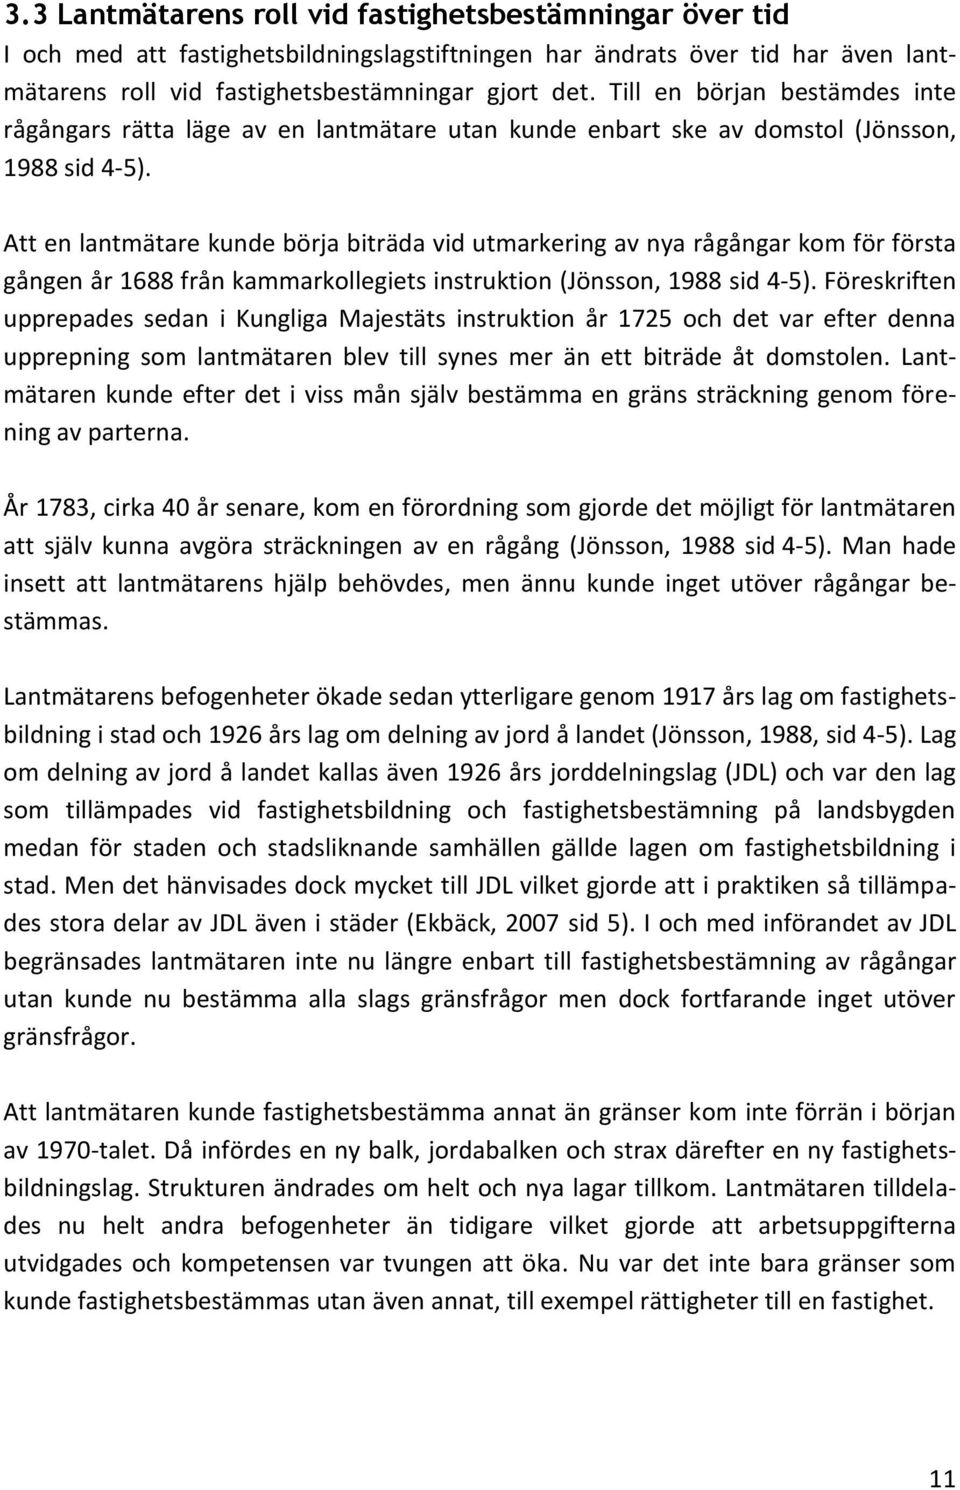 Att en lantmätare kunde börja biträda vid utmarkering av nya rågångar kom för första gången år 1688 från kammarkollegiets instruktion (Jönsson, 1988 sid 4-5).